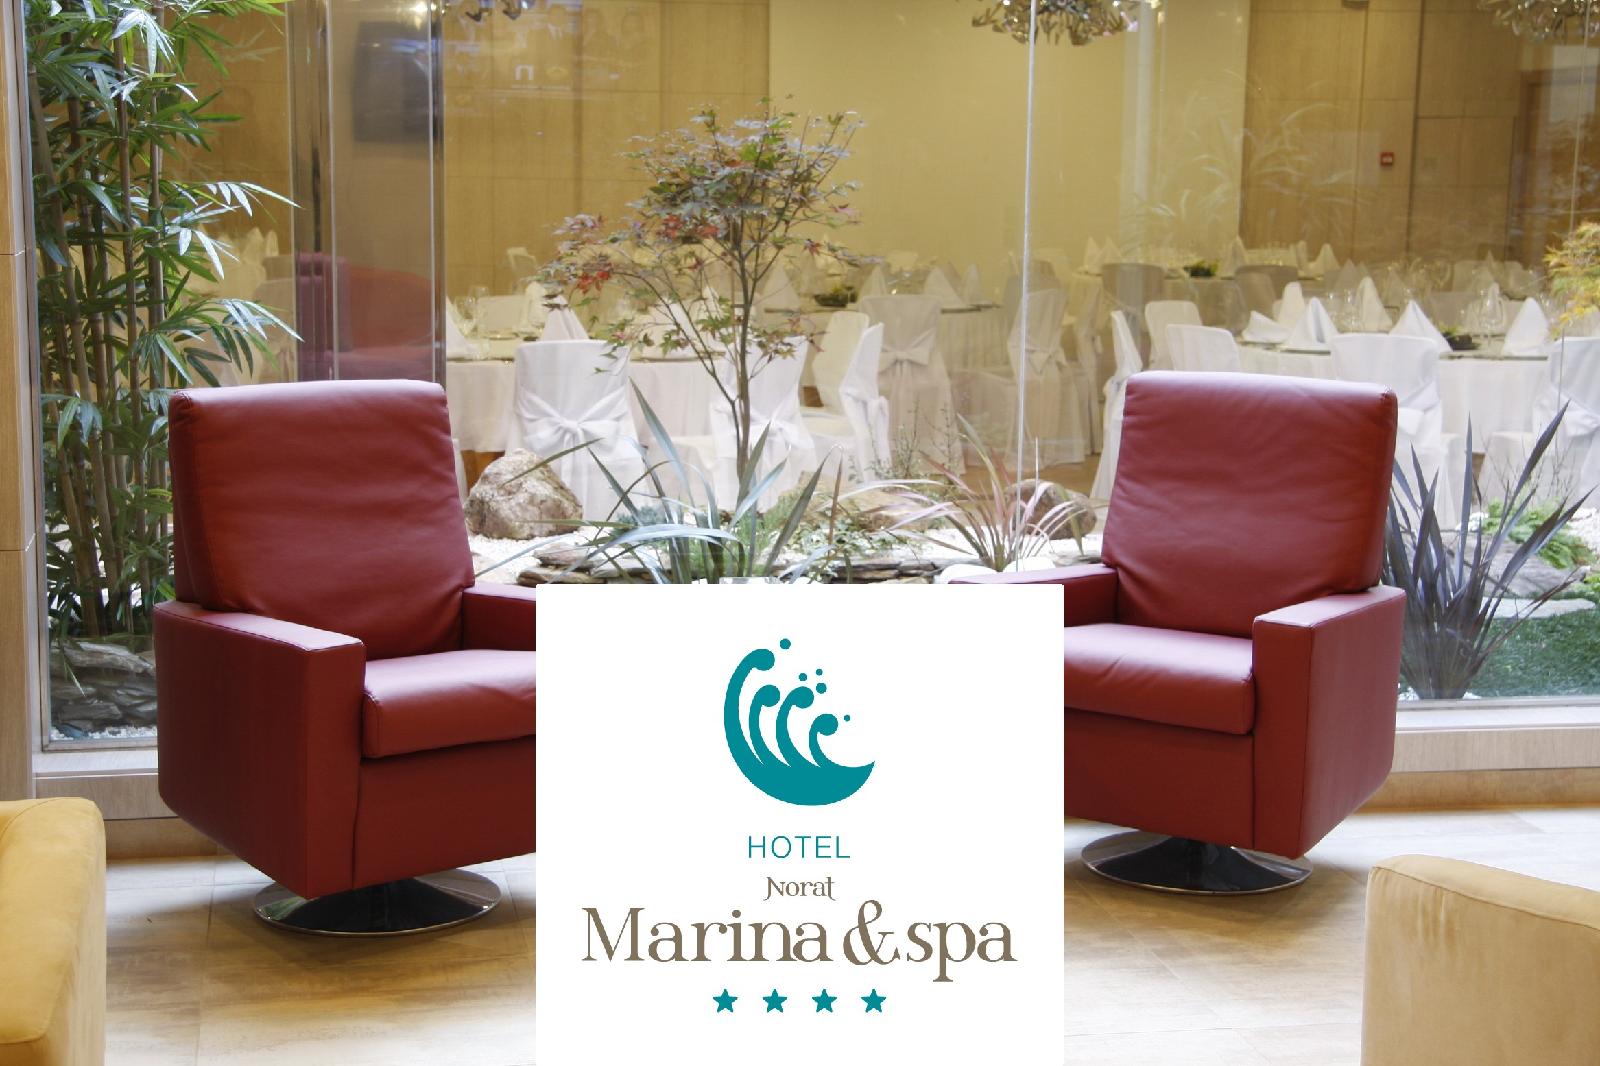 1. Hotel Norat Marina & Spa